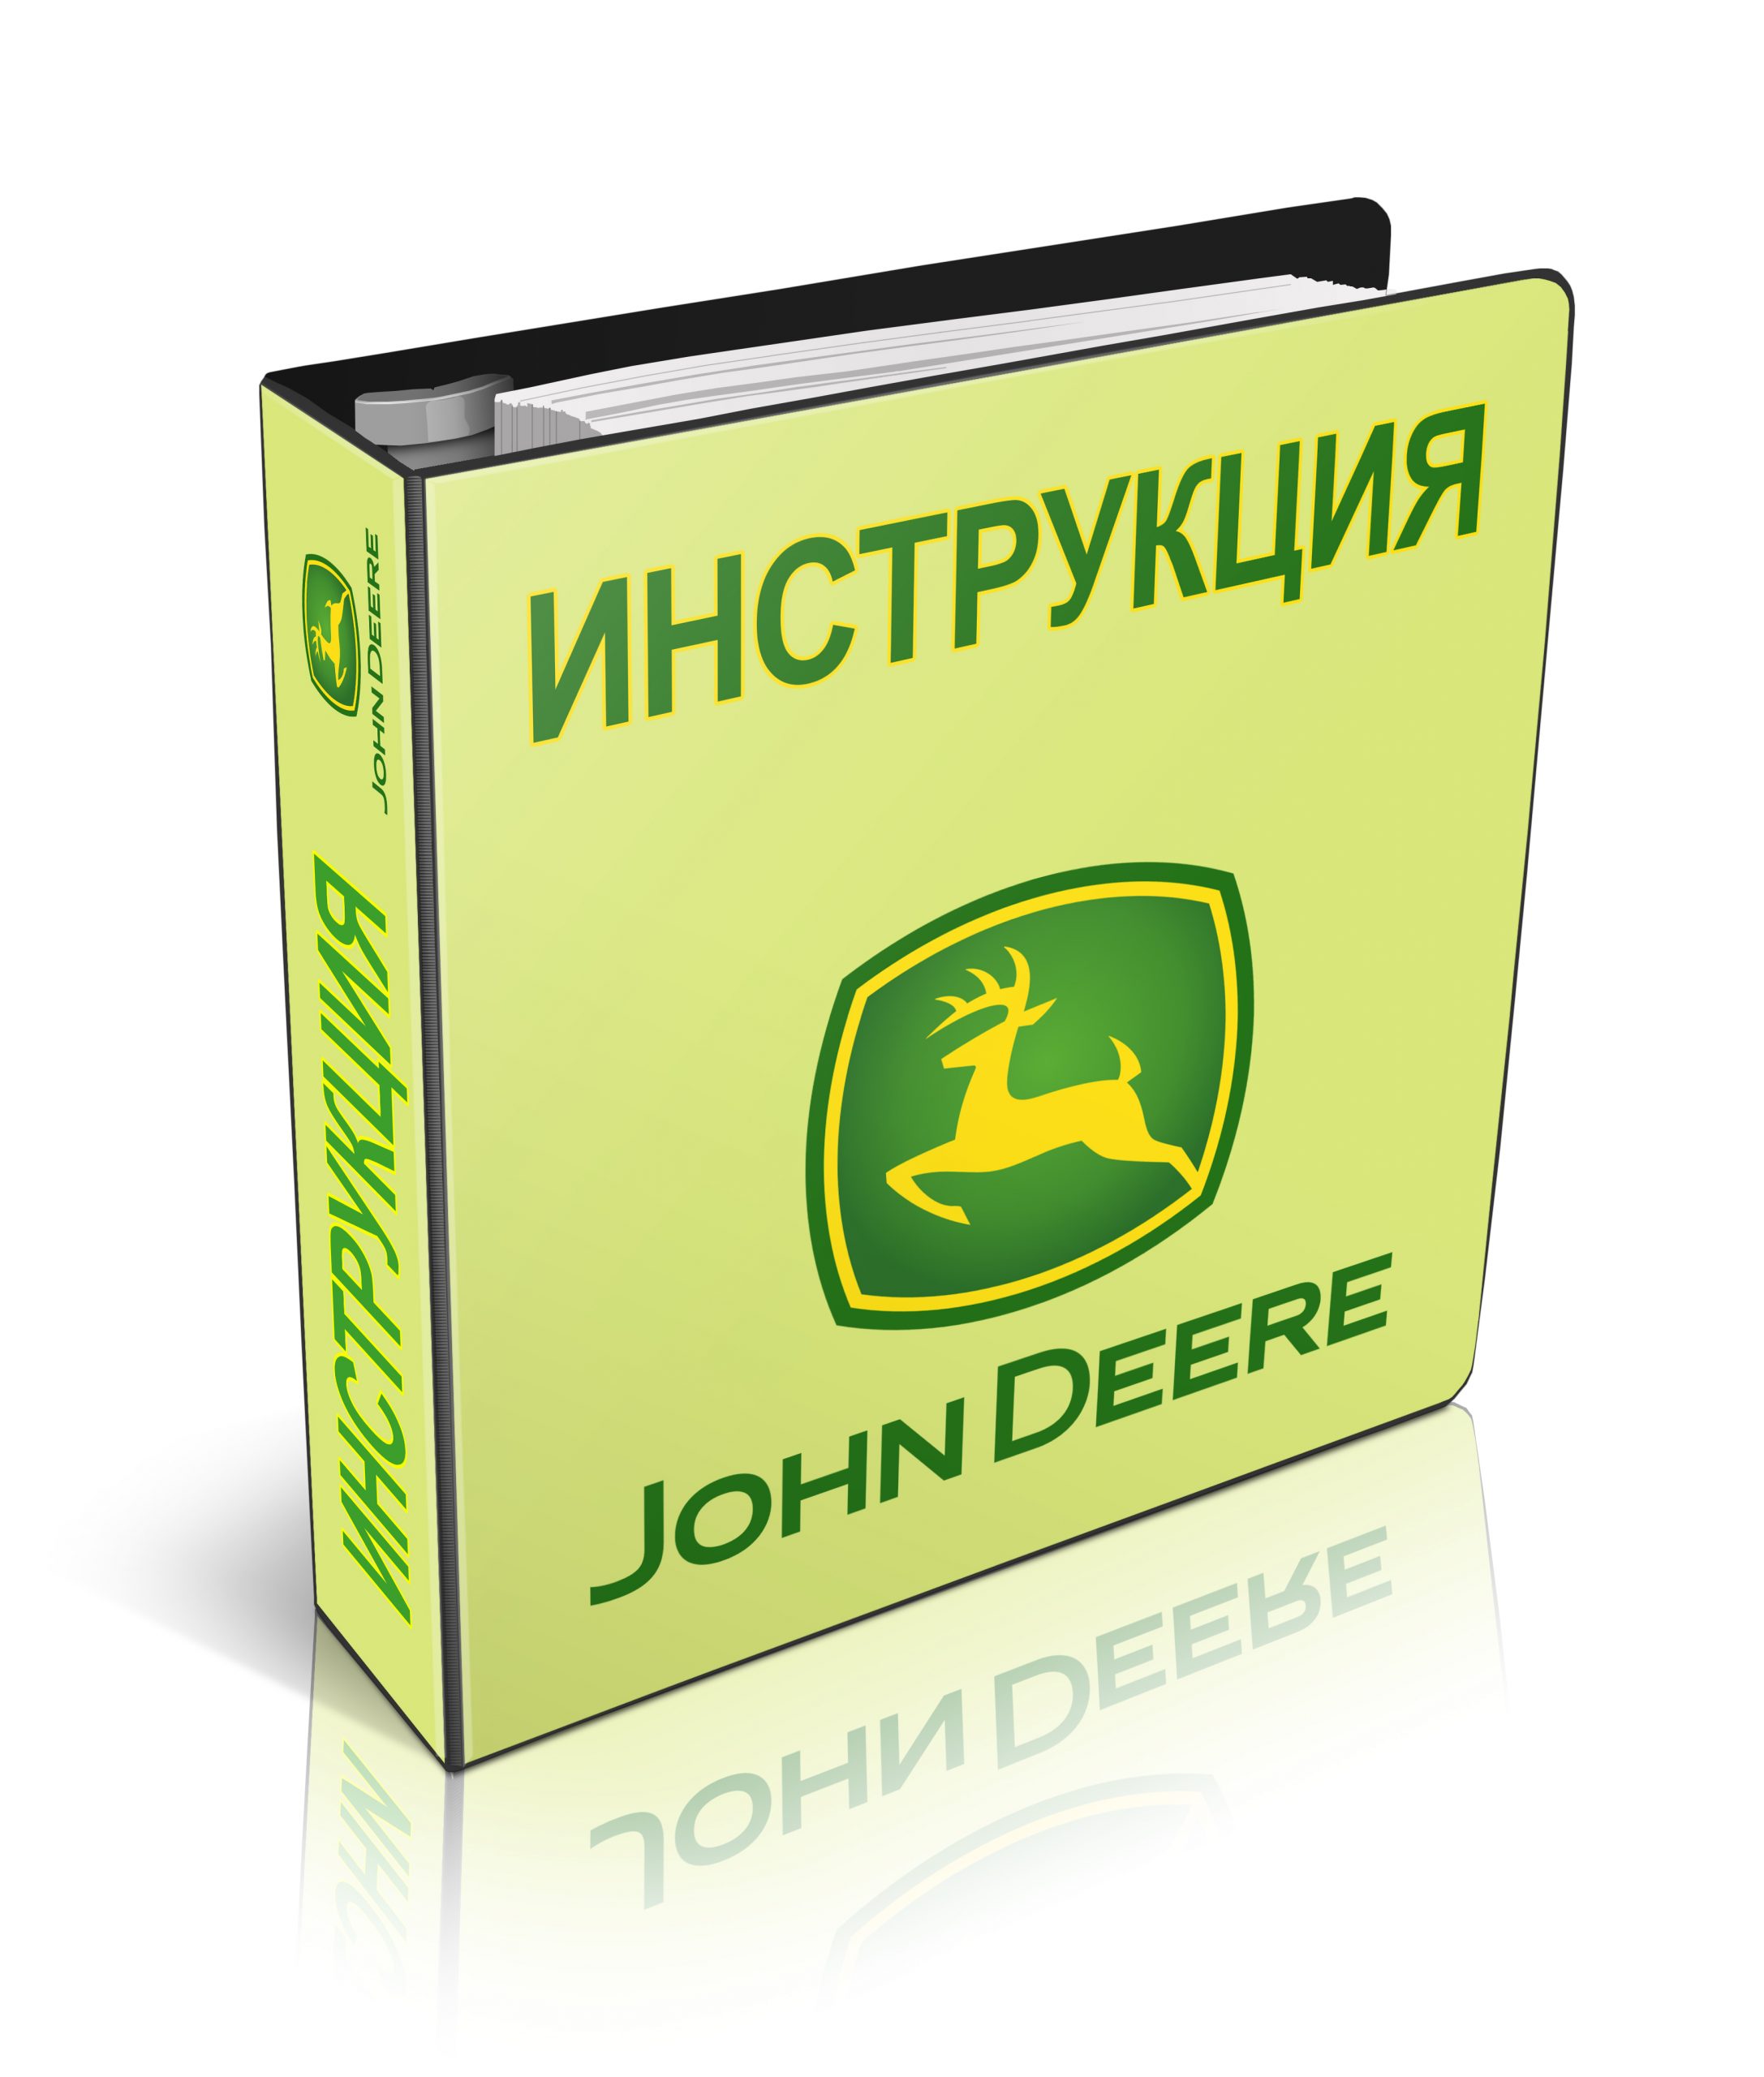 John Deere инструкция по эксплуатации на русском языке. Настройки, регулировки, техническое обслуживание, коды ошибок